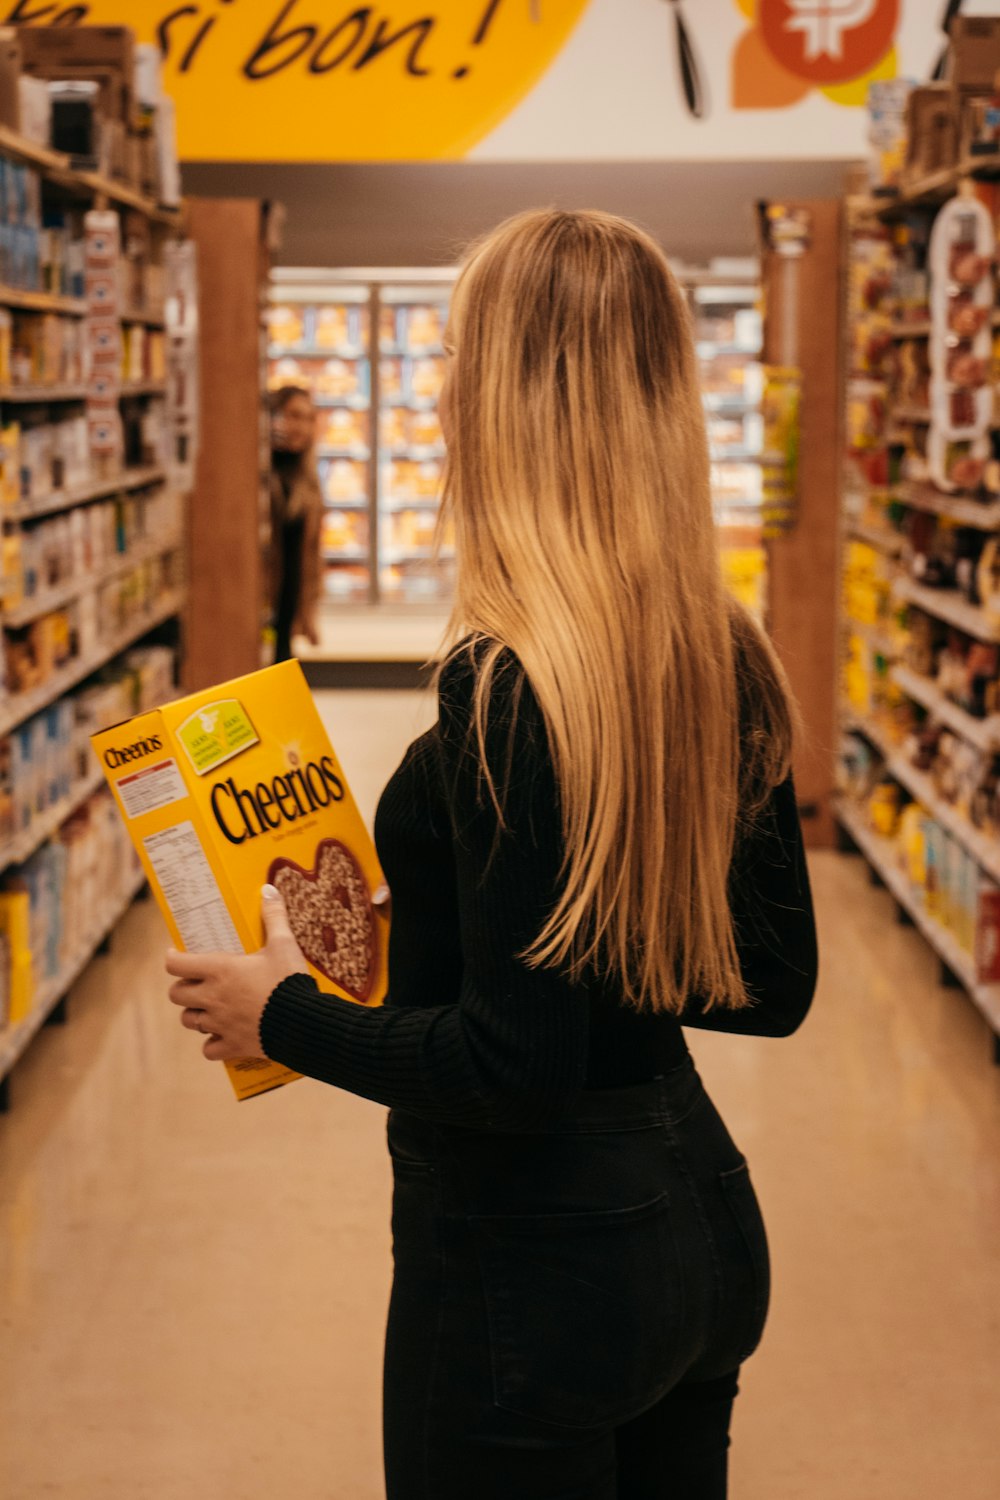 femme portant une chemise noire à manches longues tenant une boîte de céréales Cheerios debout